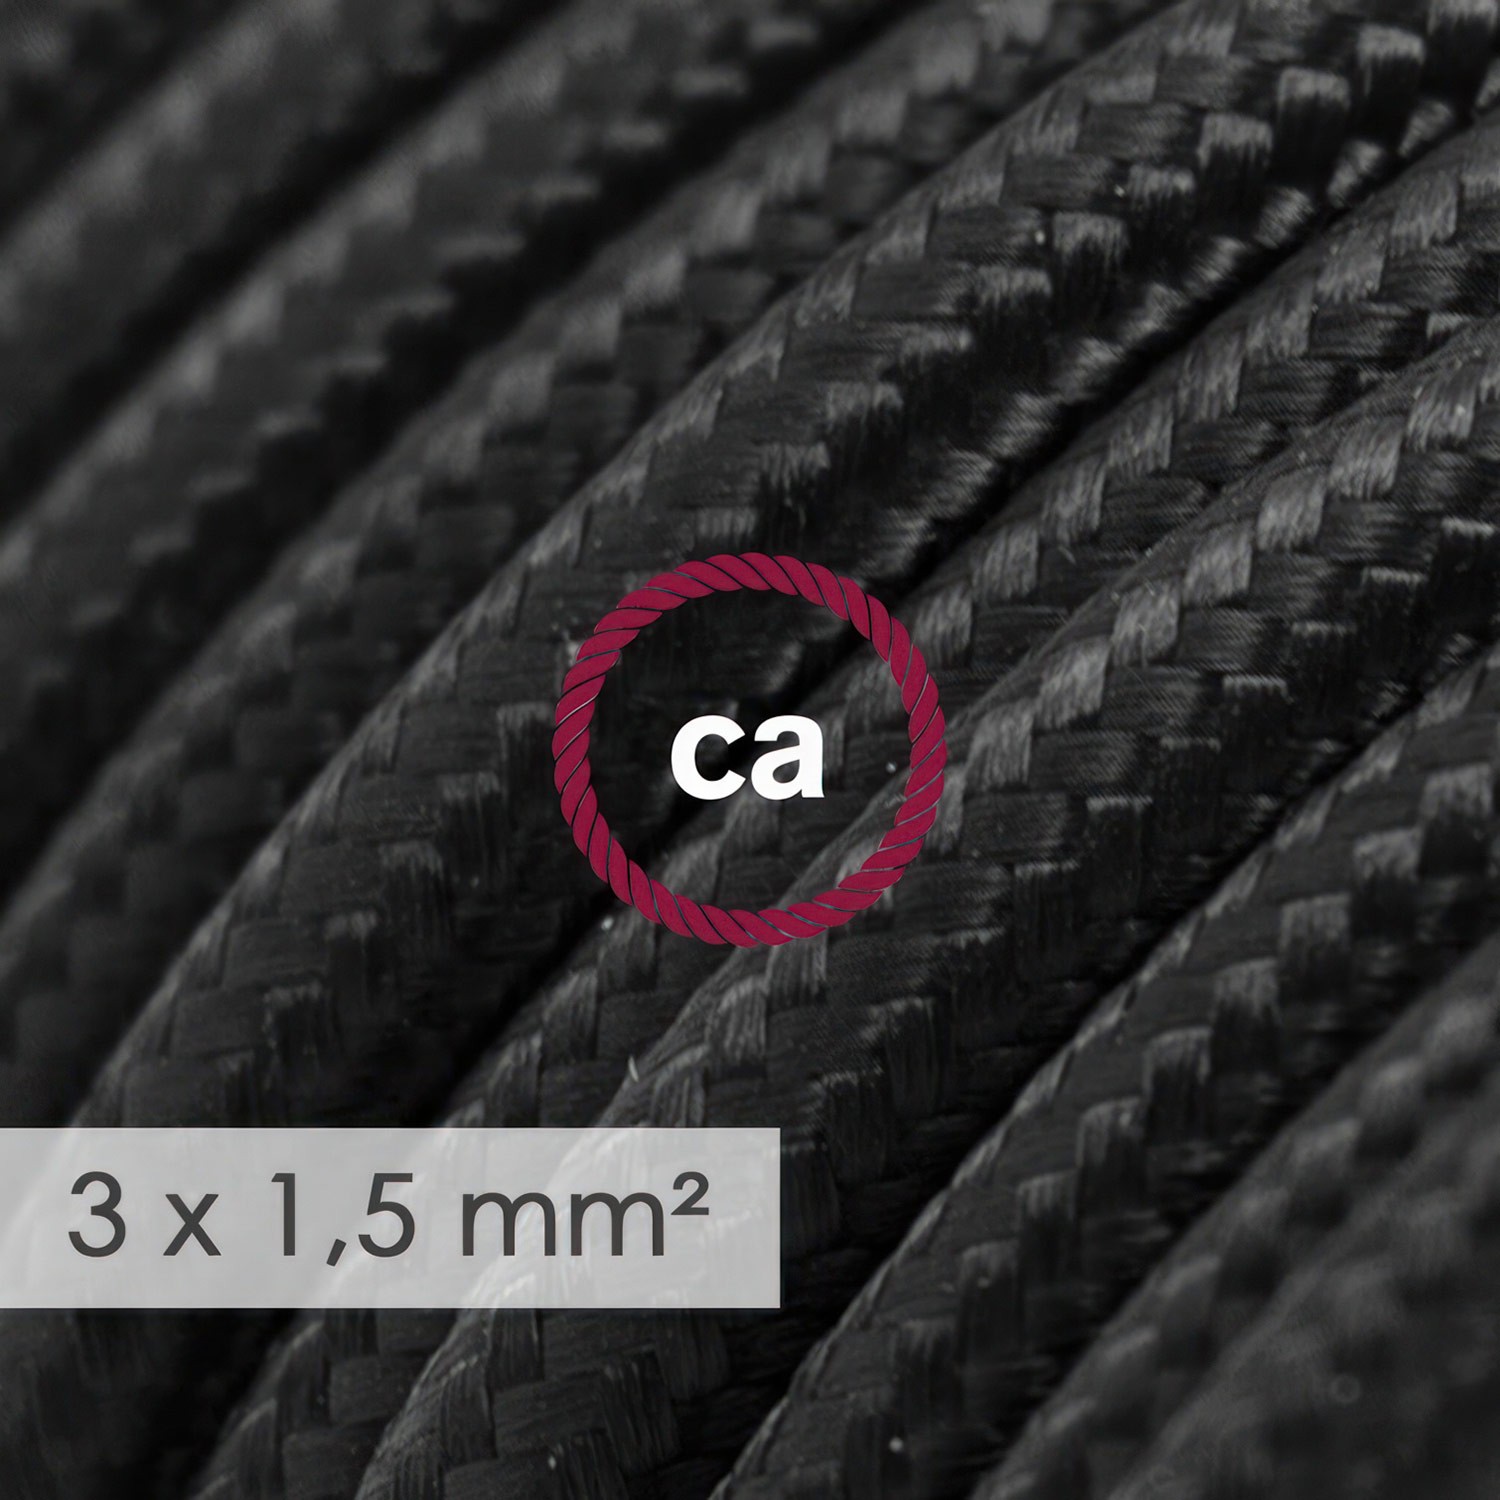 Multienchufe francés con cable en tejido colorado efecto seda Negro RM04 y clavija Schuko con anillo comfort